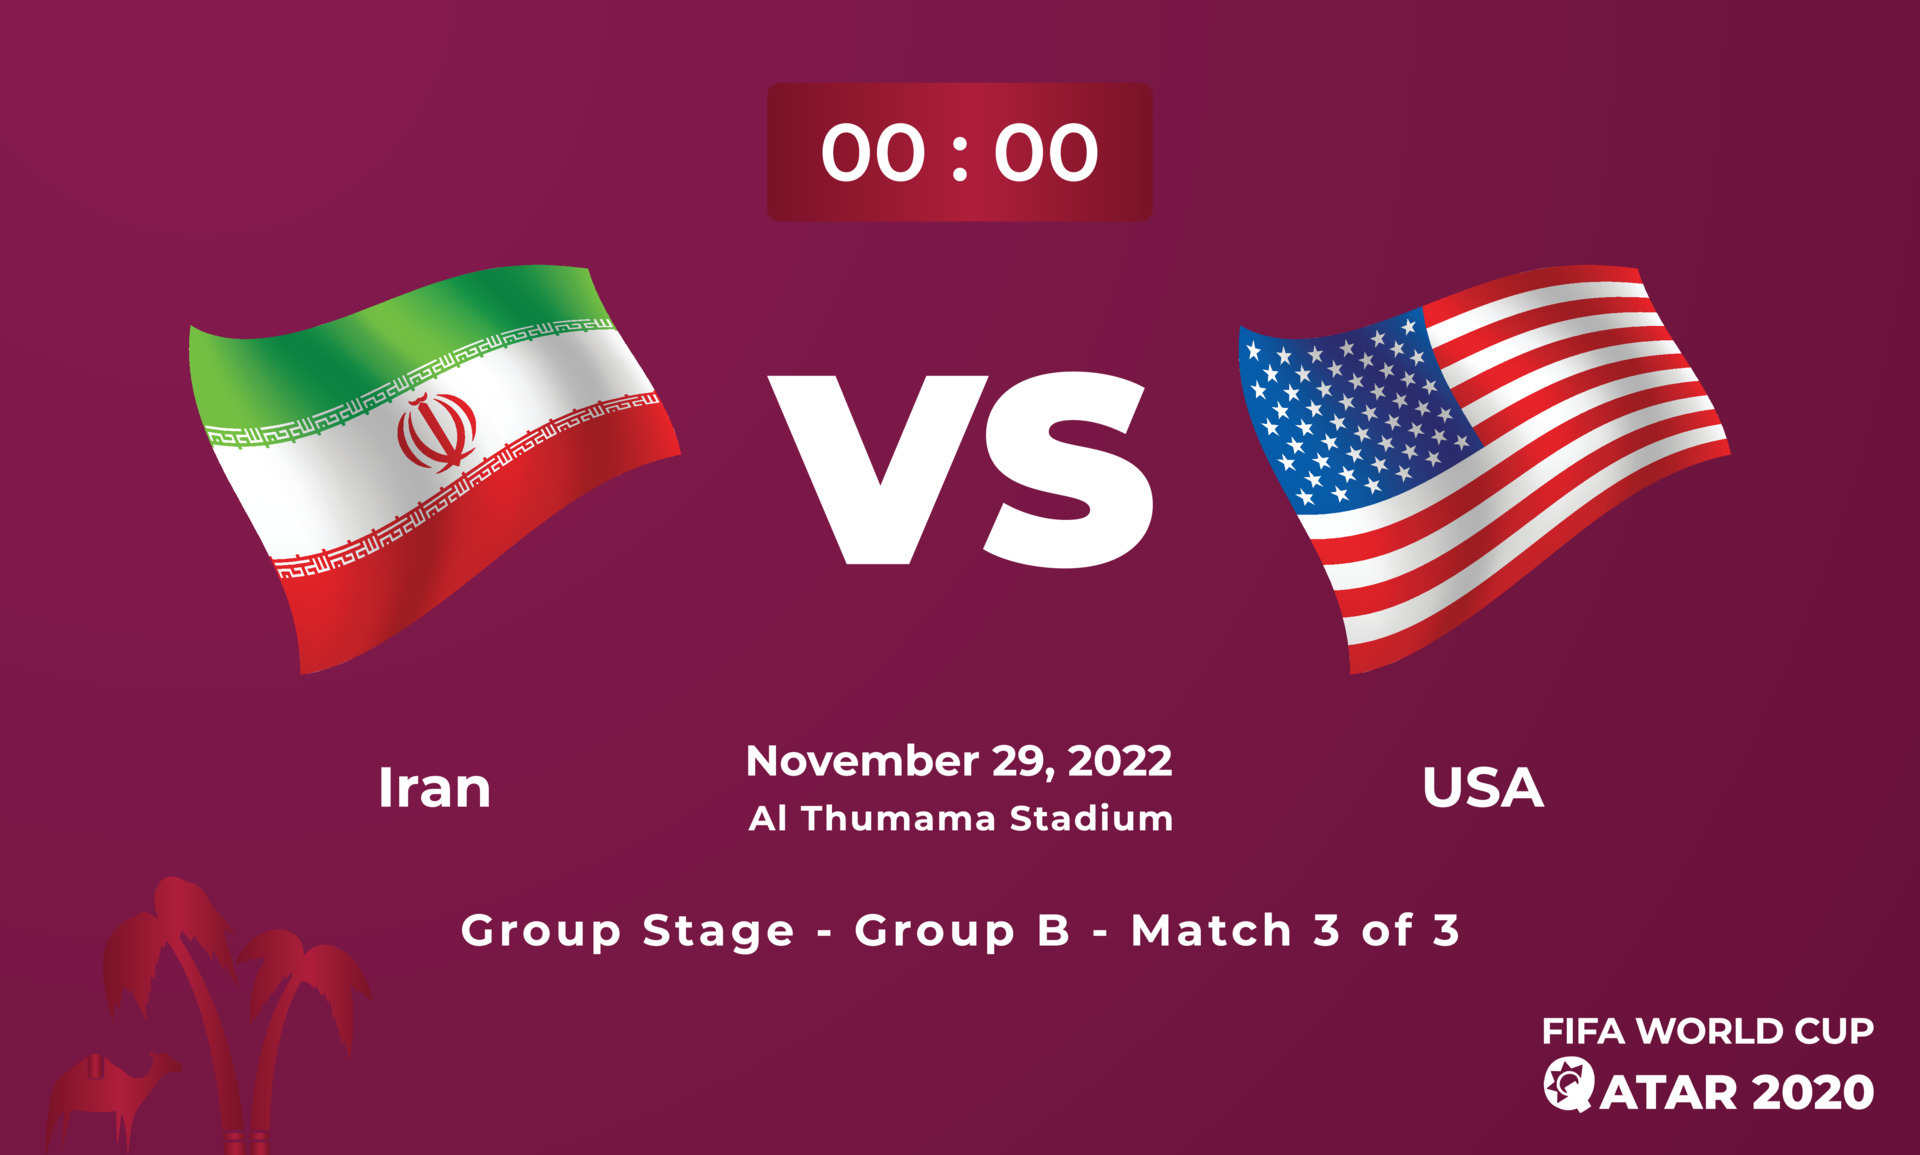 ฟุตบอลโลก 2022 รอบแบ่งกลุ่ม นัดที่ 2 ระหว่าง IRAN VS. UNITED STATES